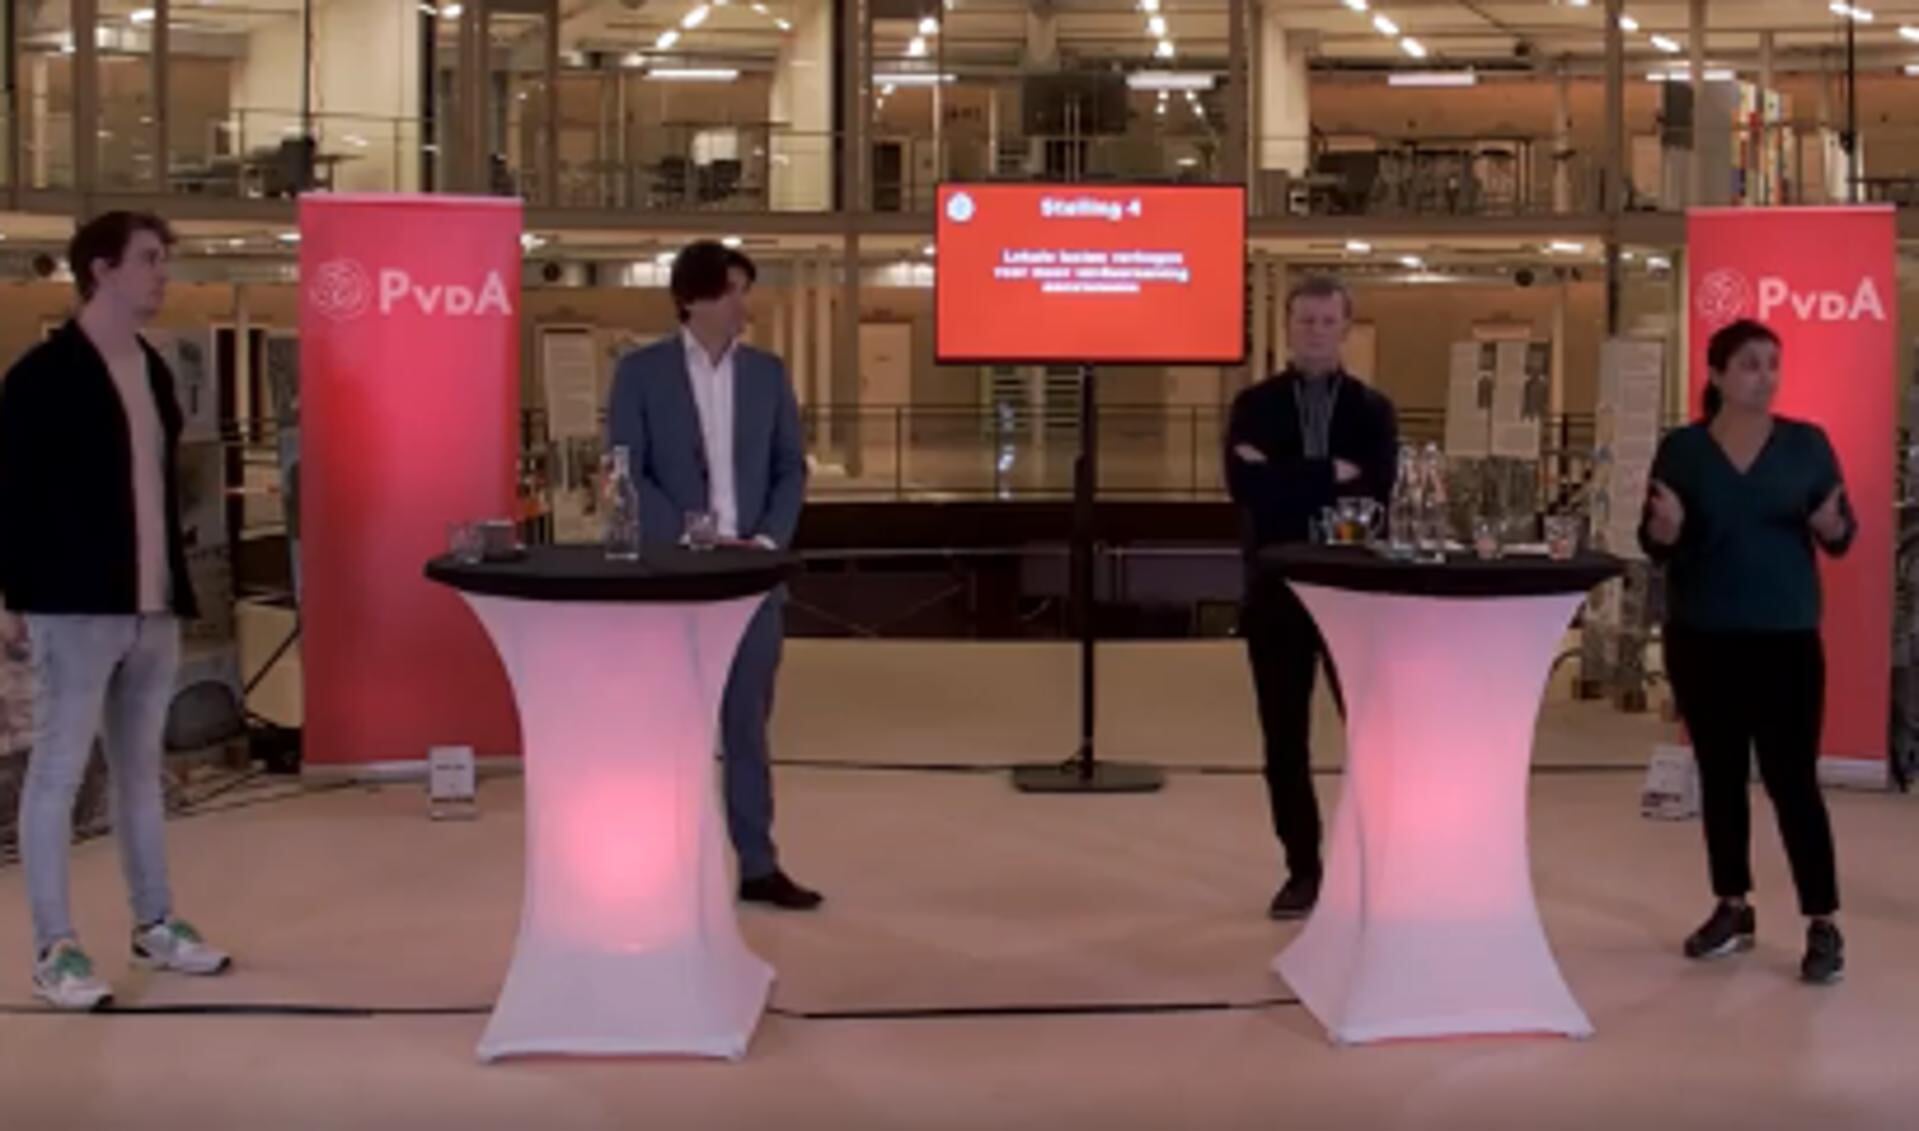 Het debat werd georganiseerd door de PvdA en vond plaats in de Koepel.